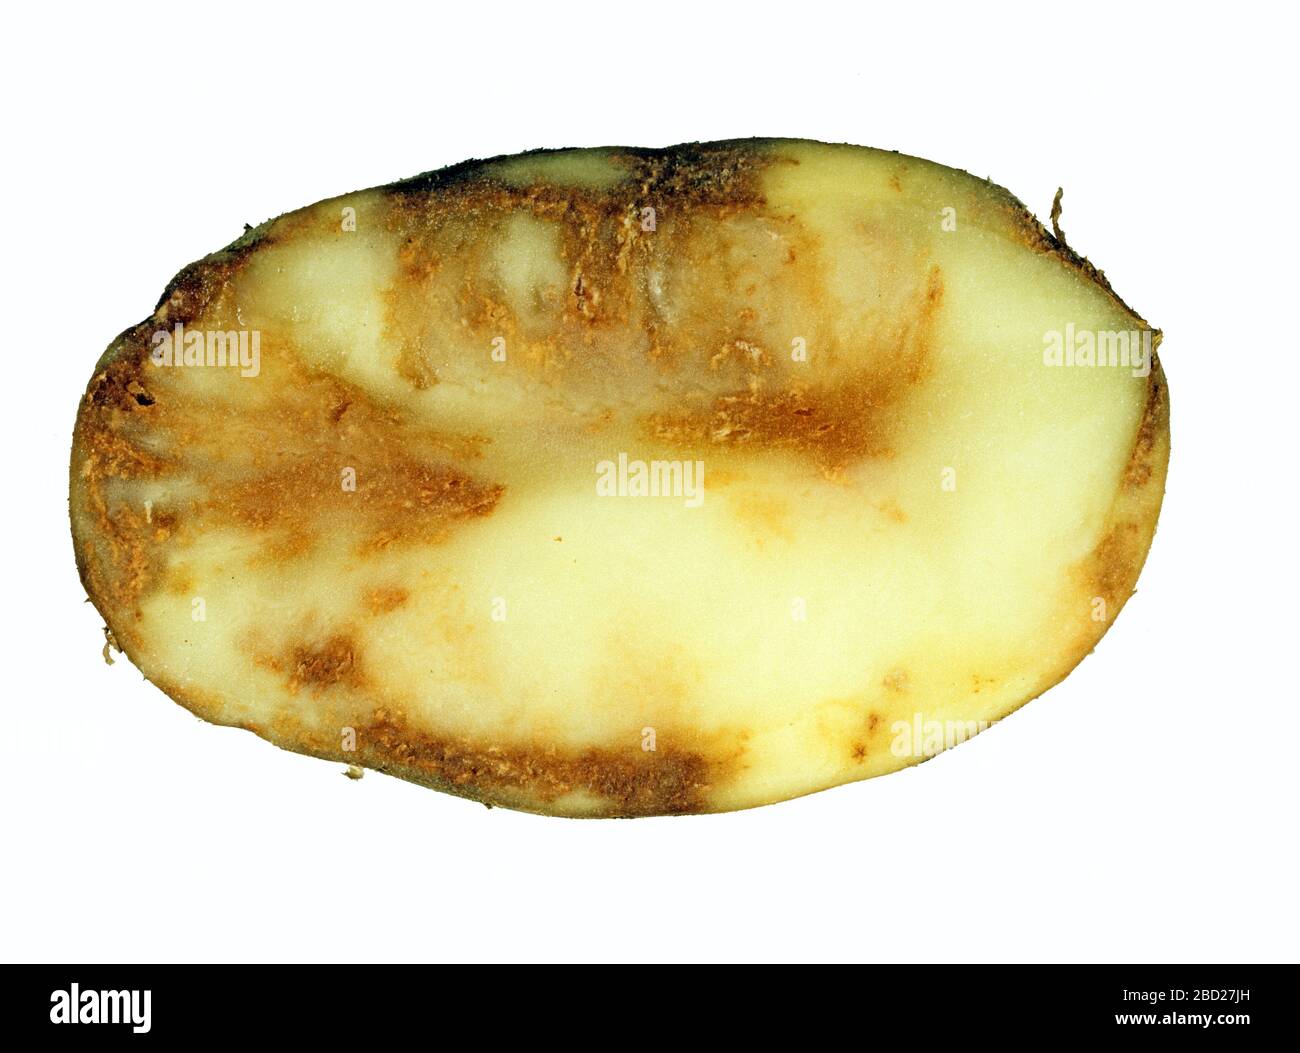 Kartoffelknolle aus einer Ernte mit Spätblitze (Phtophthora infestans), die auf eine Infektion der Oomycetel-Krankheit auf dem in einem Abschnitt gezeigten Fleisch zurückgeht Stockfoto